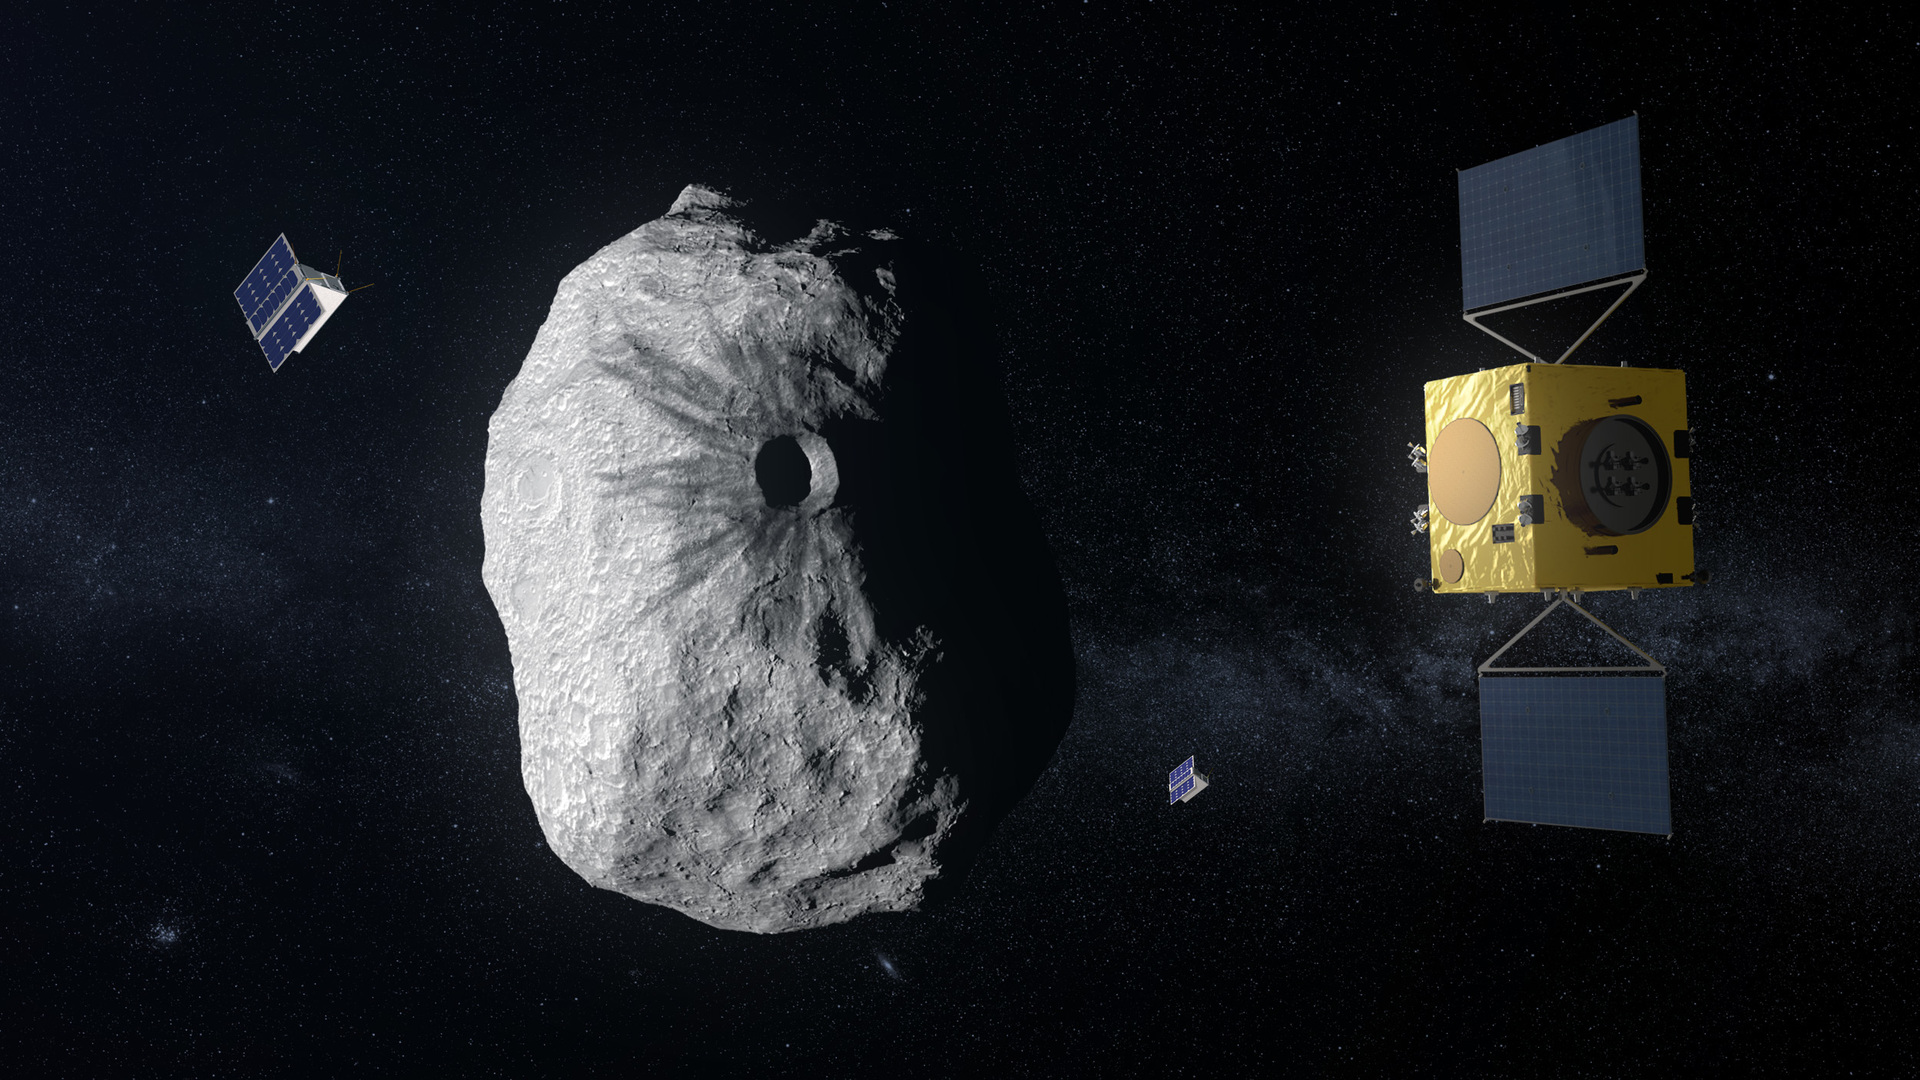 Самоуправляемый космический зонд поможет предотвратить столкновение астероидов с Землёй